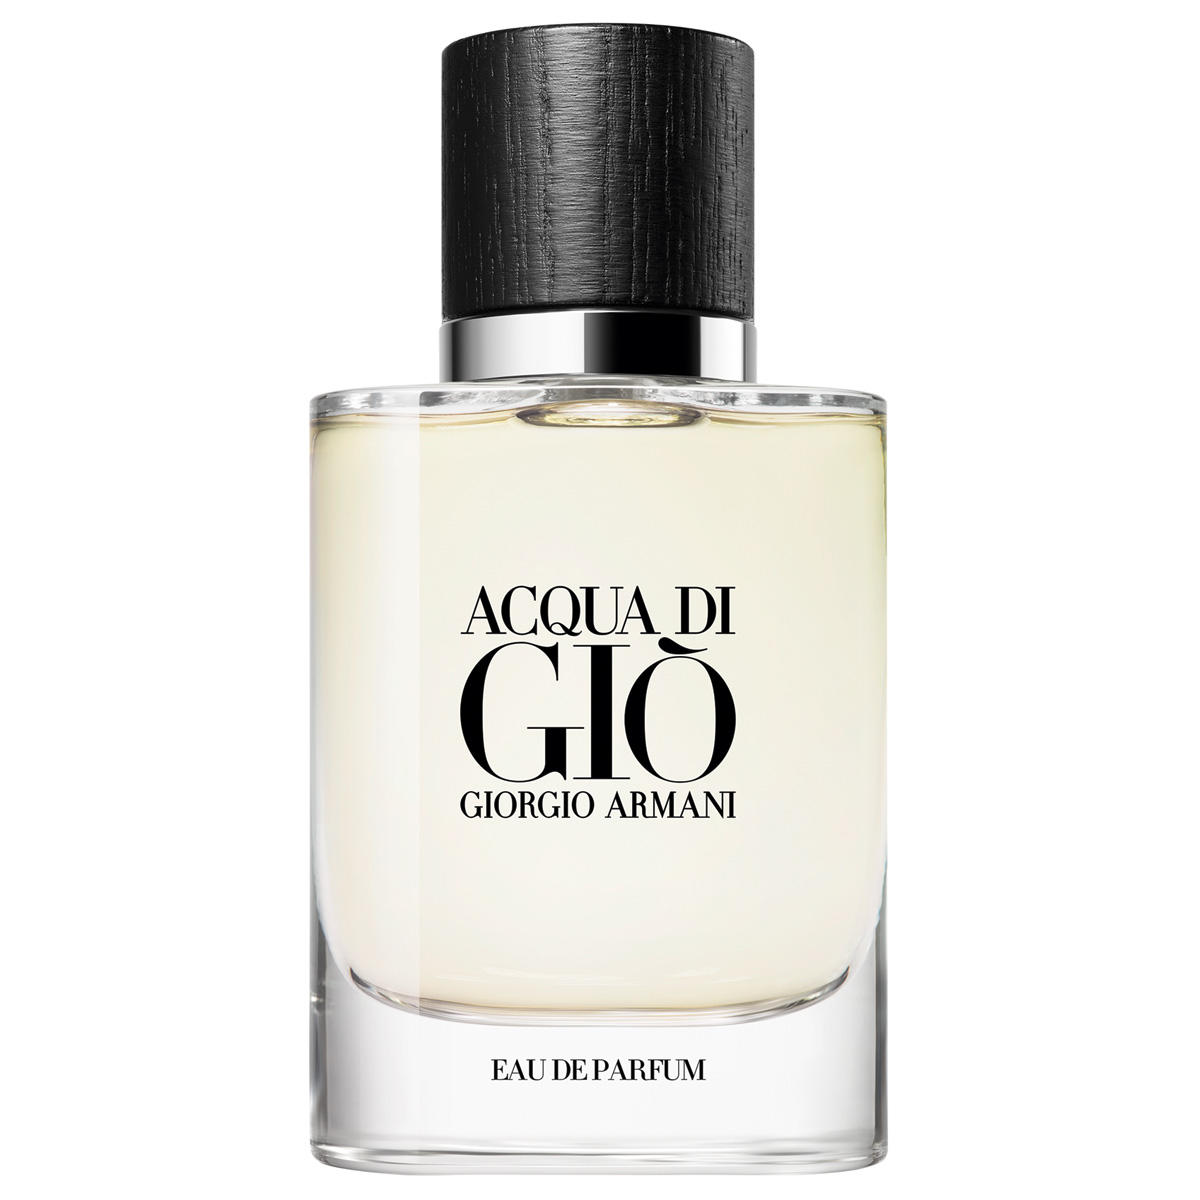 Giorgio Armani ACQUA DI GIÒ Refillable Eau de Parfum 40 ml